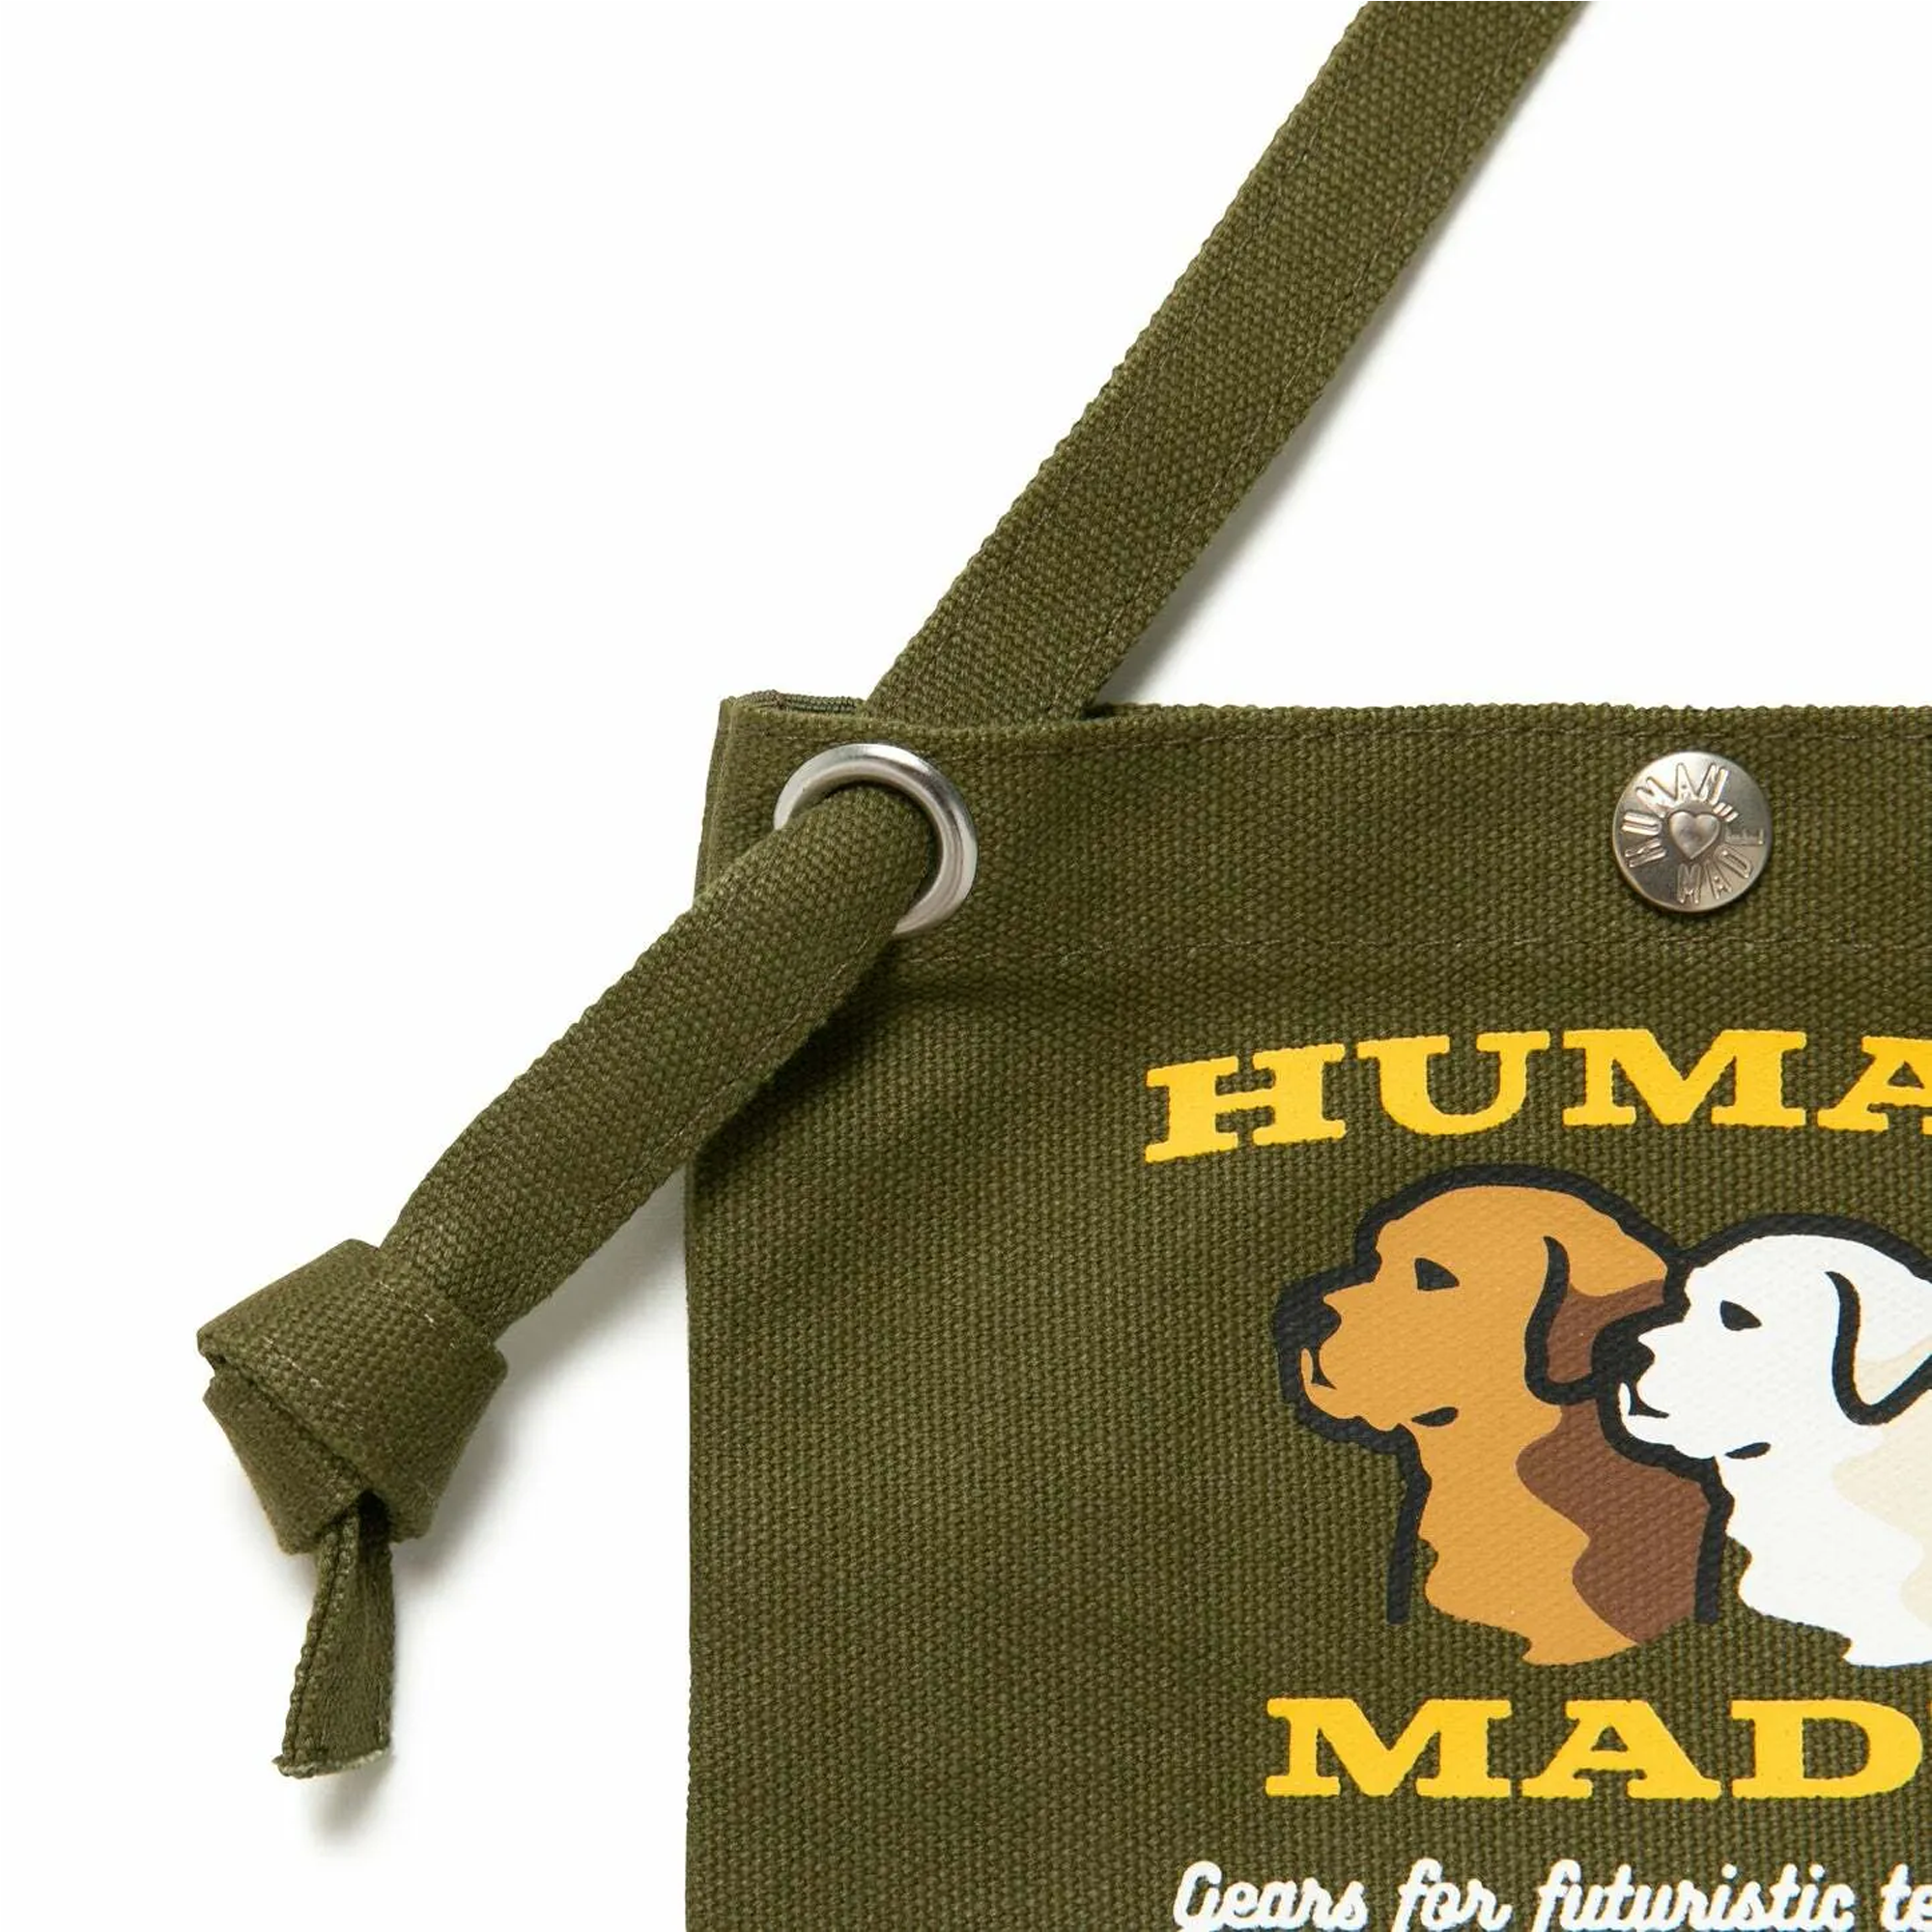 Bag × human made - Gem